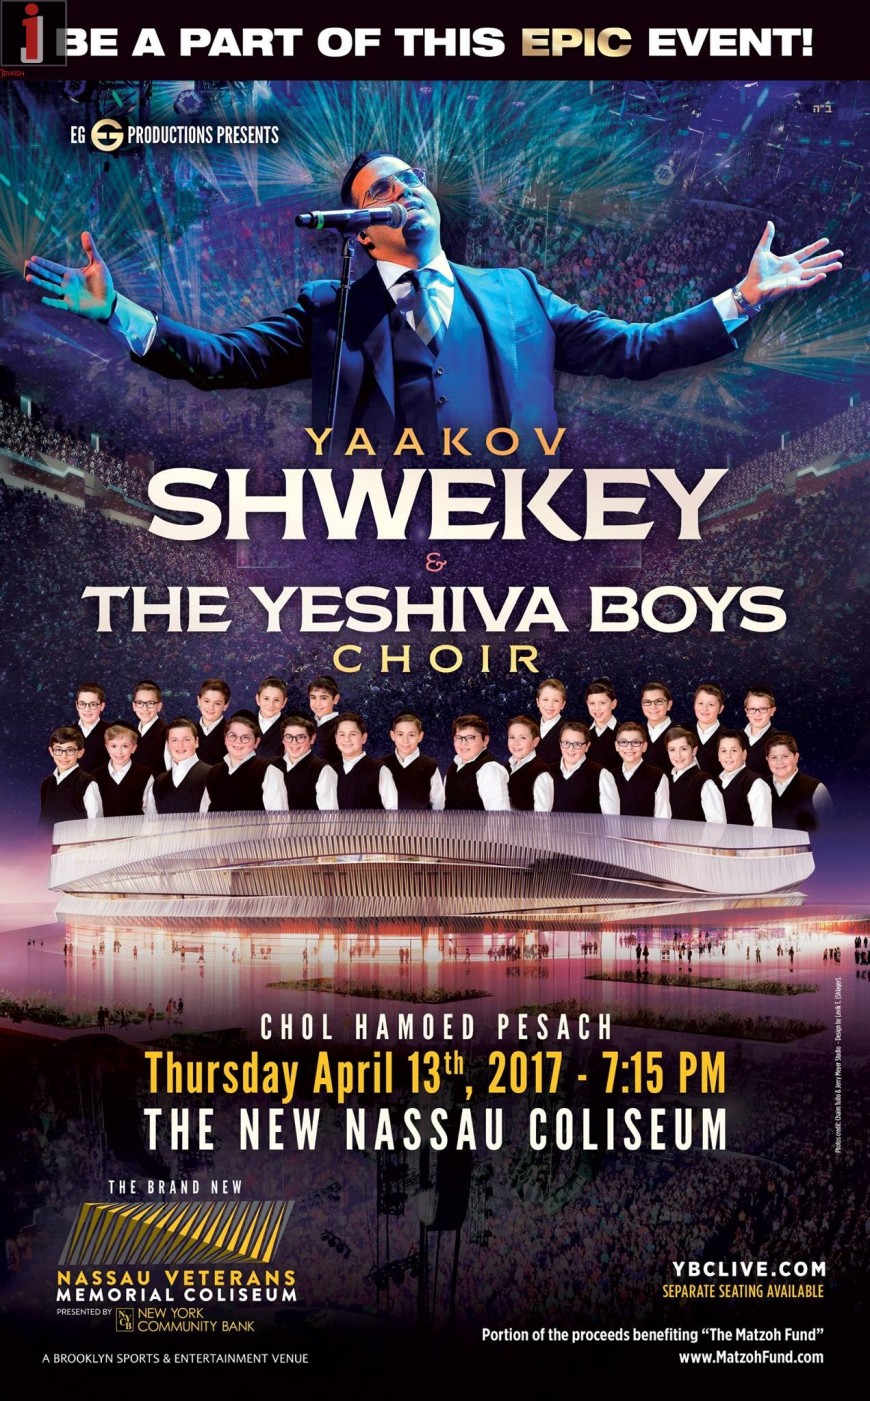 EG Productions Presents YAAKOV SHWEKEY & THE YESHIVA BOYS CHOIR